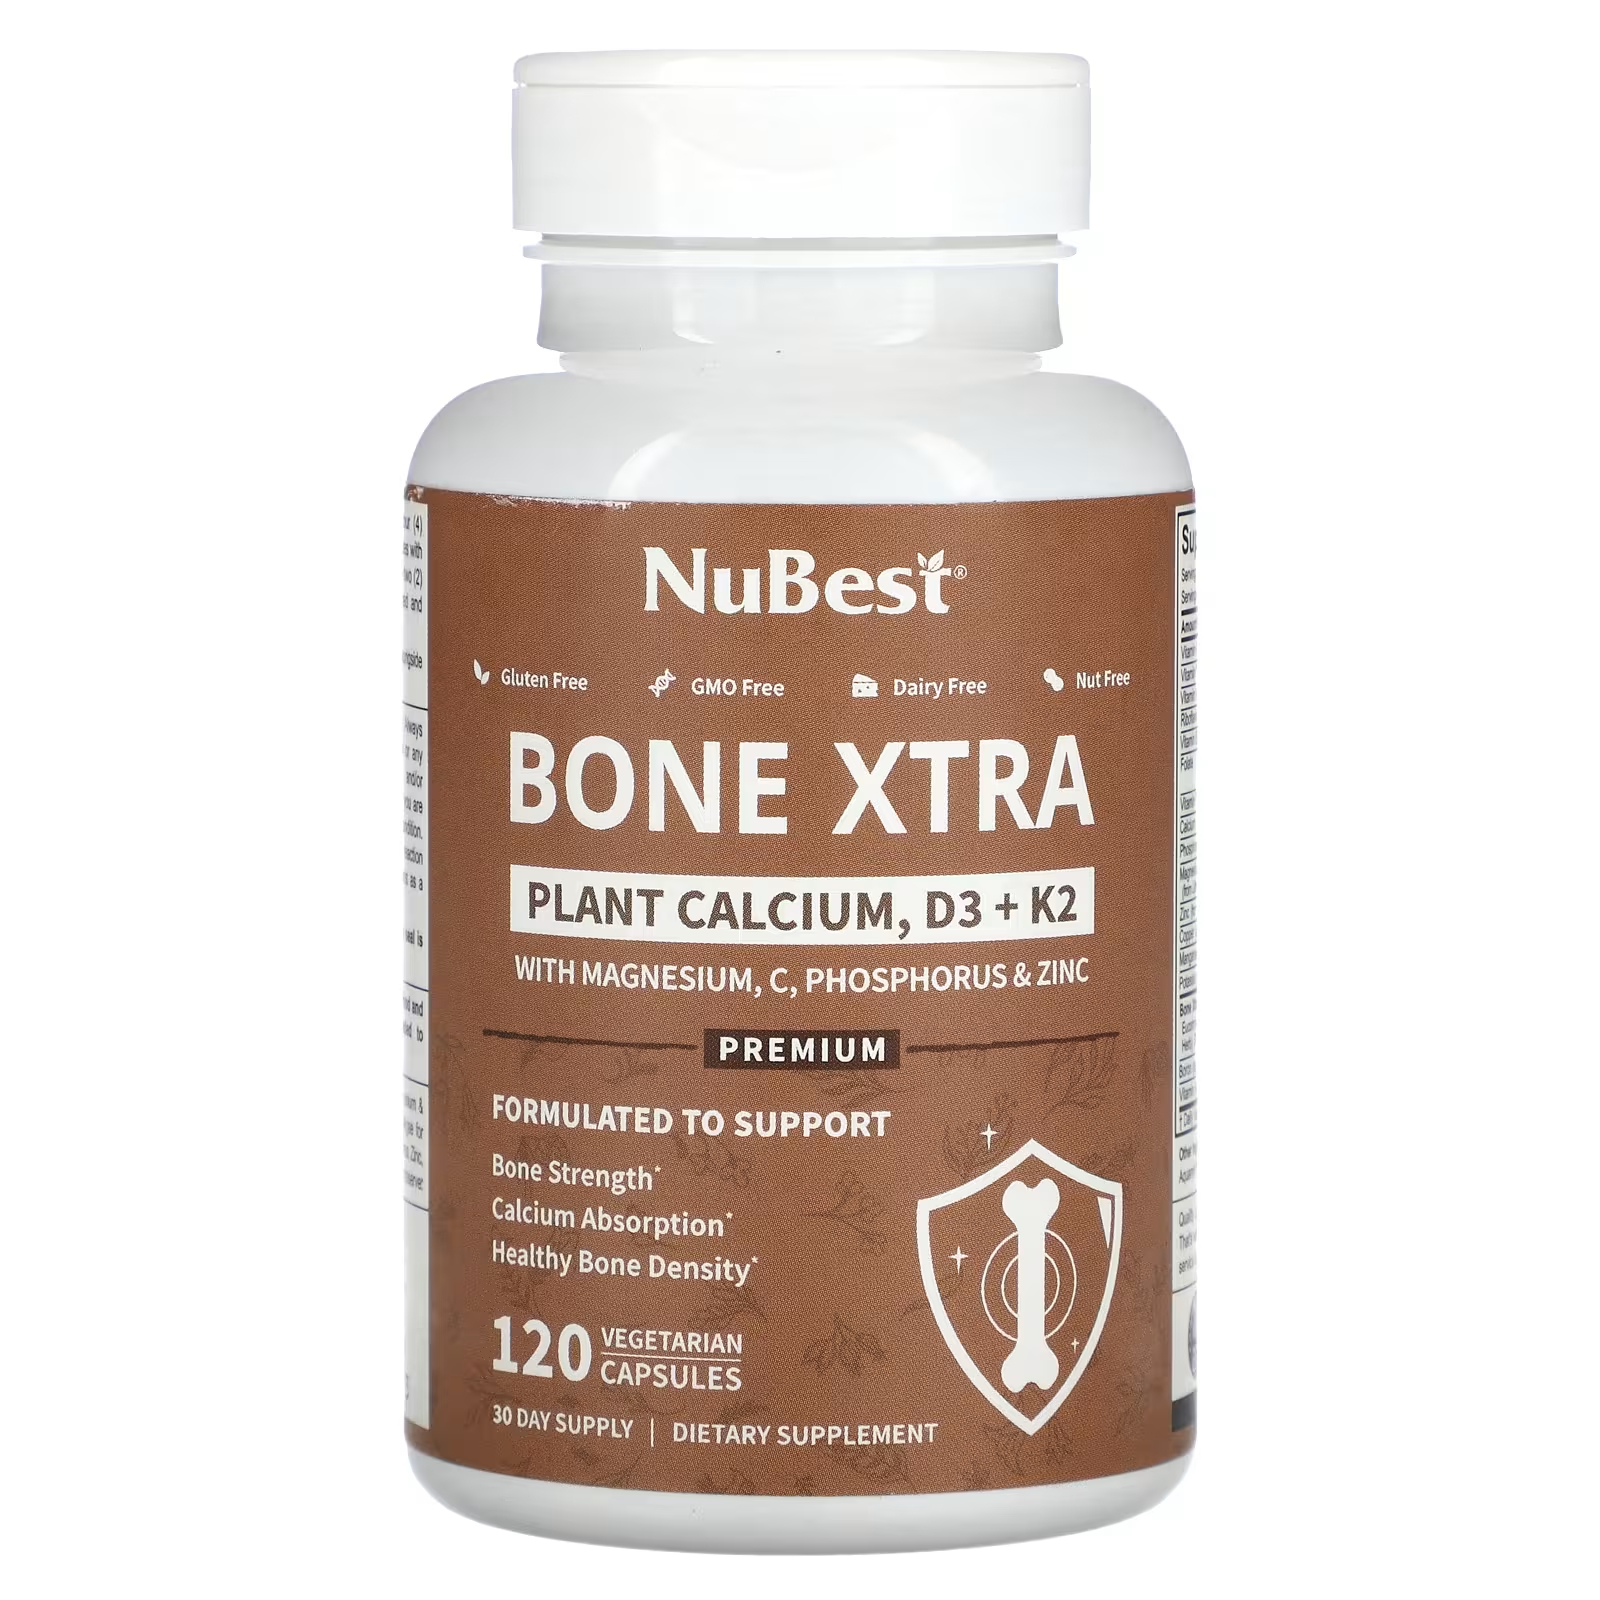 NuBest Bone Xtra Растительный кальций D3 + K2 120 вегетарианских капсул sleep xtra 60 вегетарианских капсул nubest